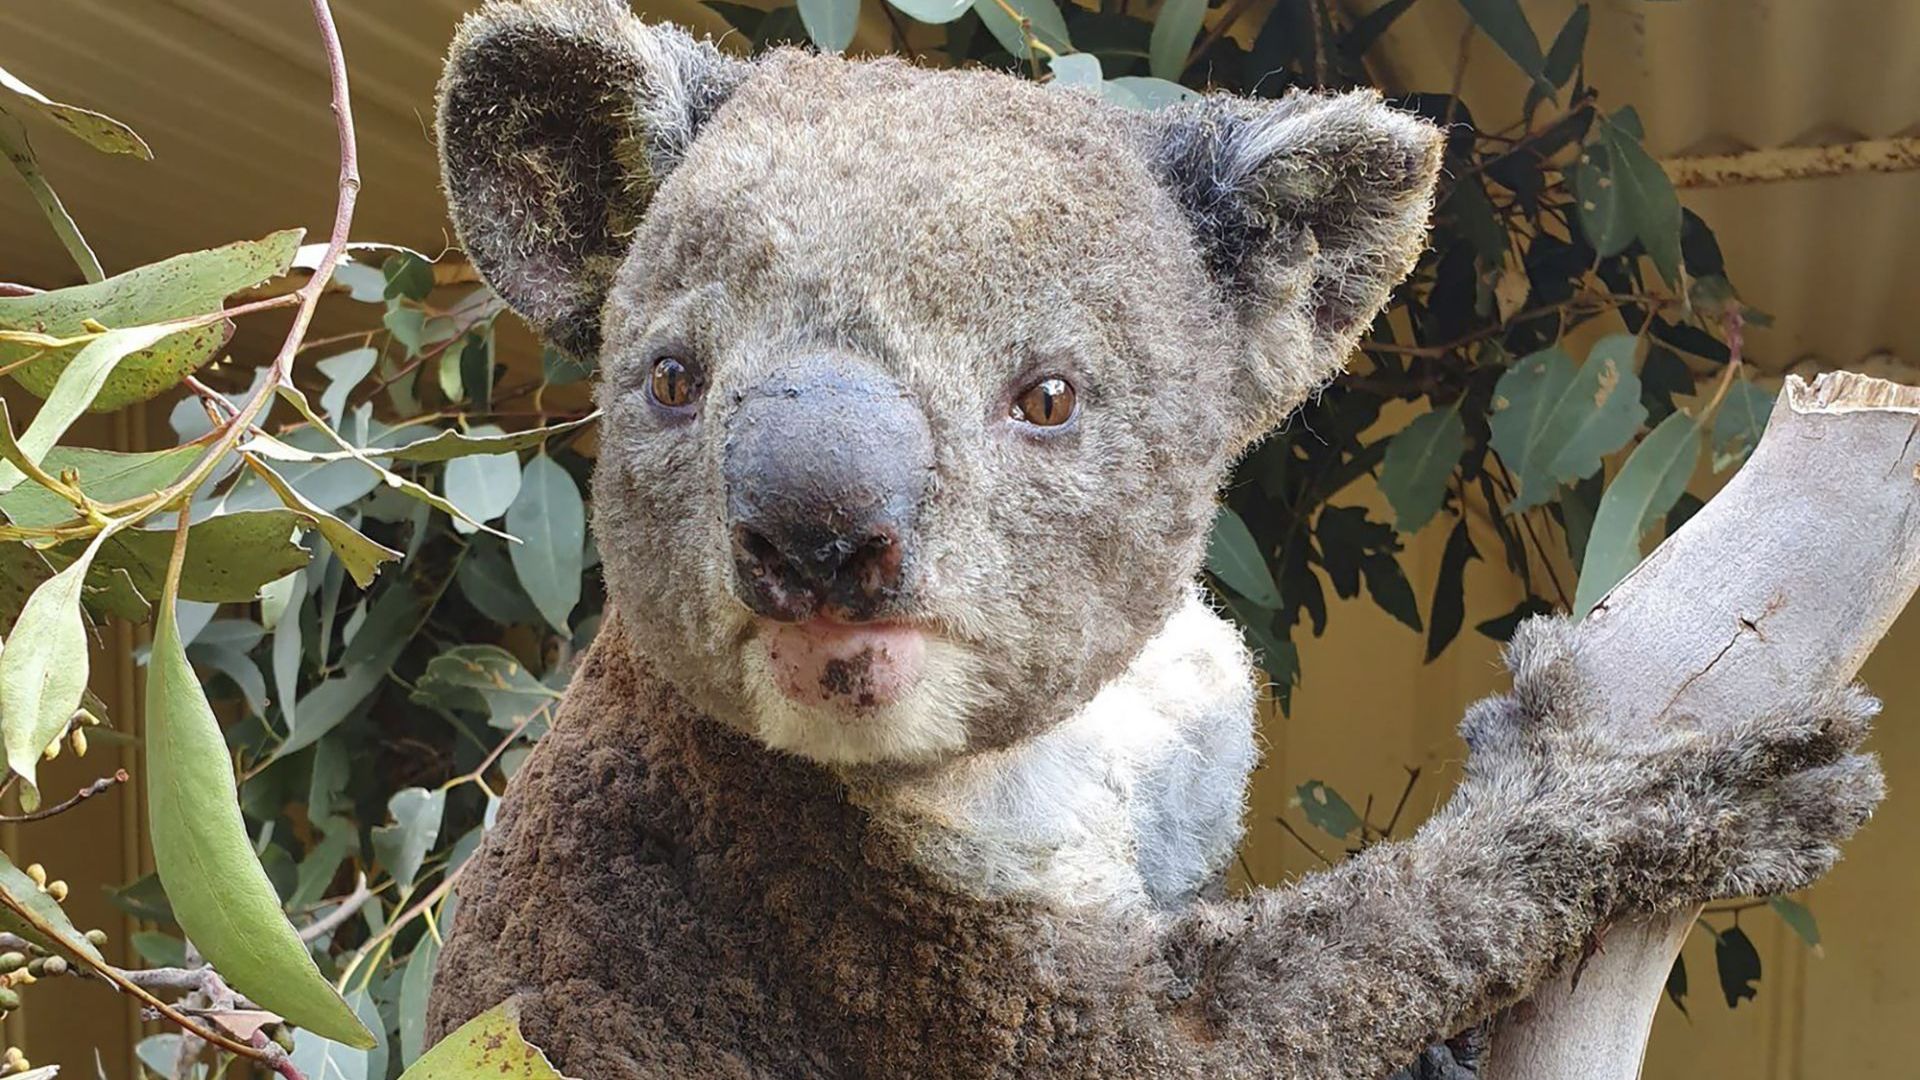 7 министри в Австралия заплашени с уволнение заради коалите